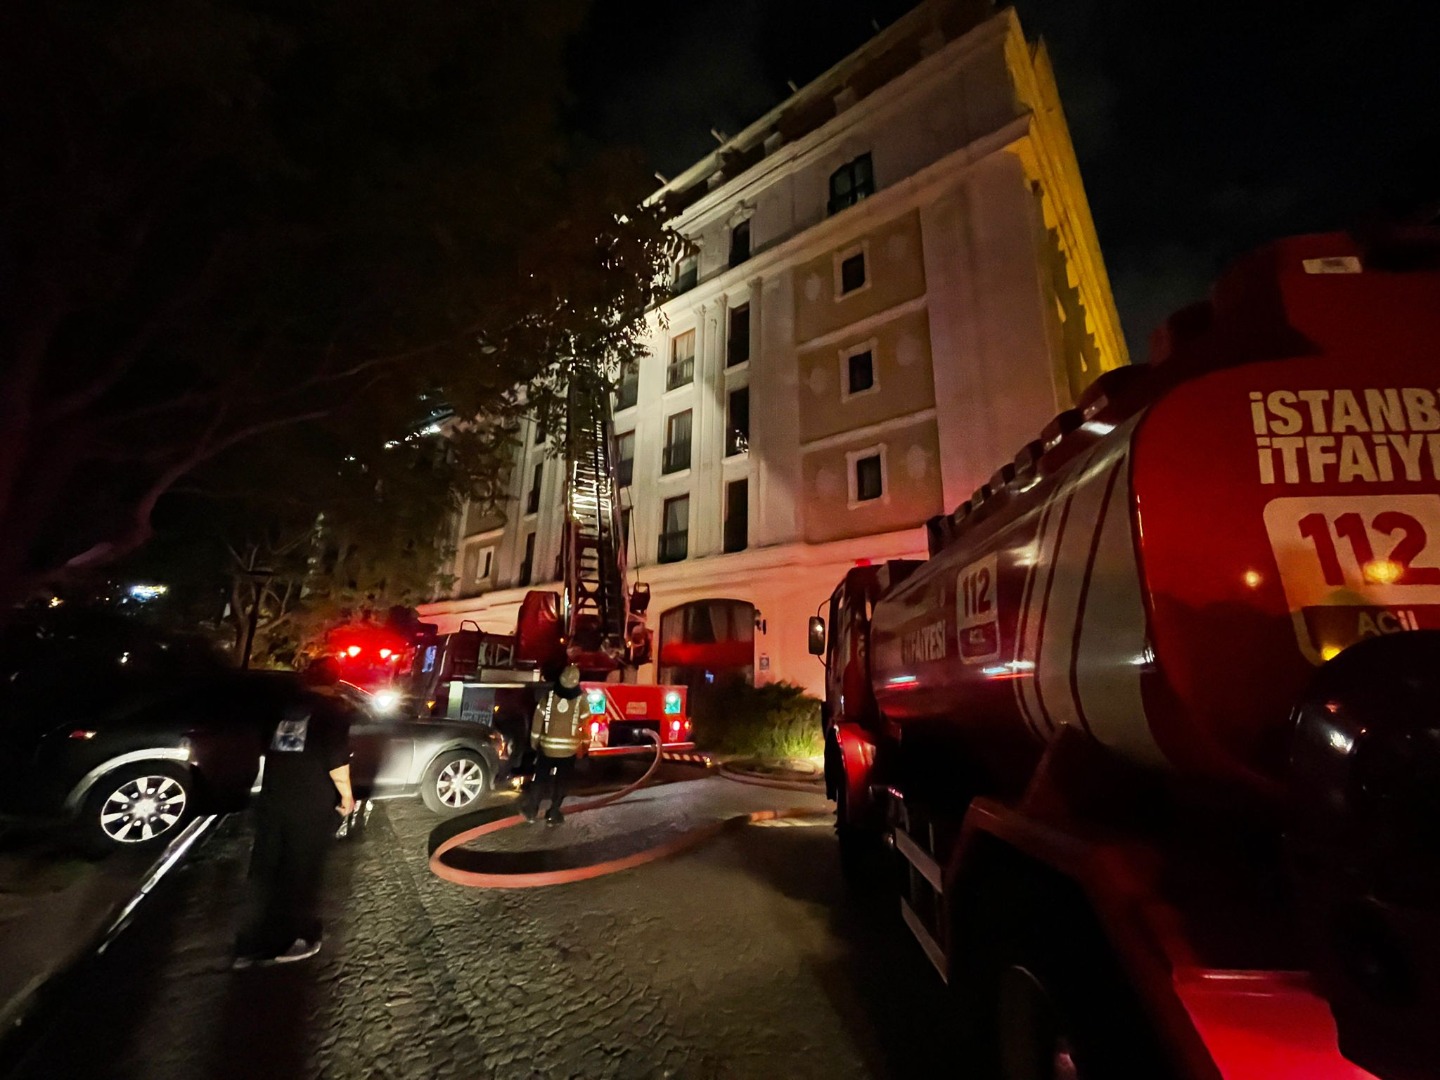 İstanbul'da 4 katlı otelde yangın çıktı